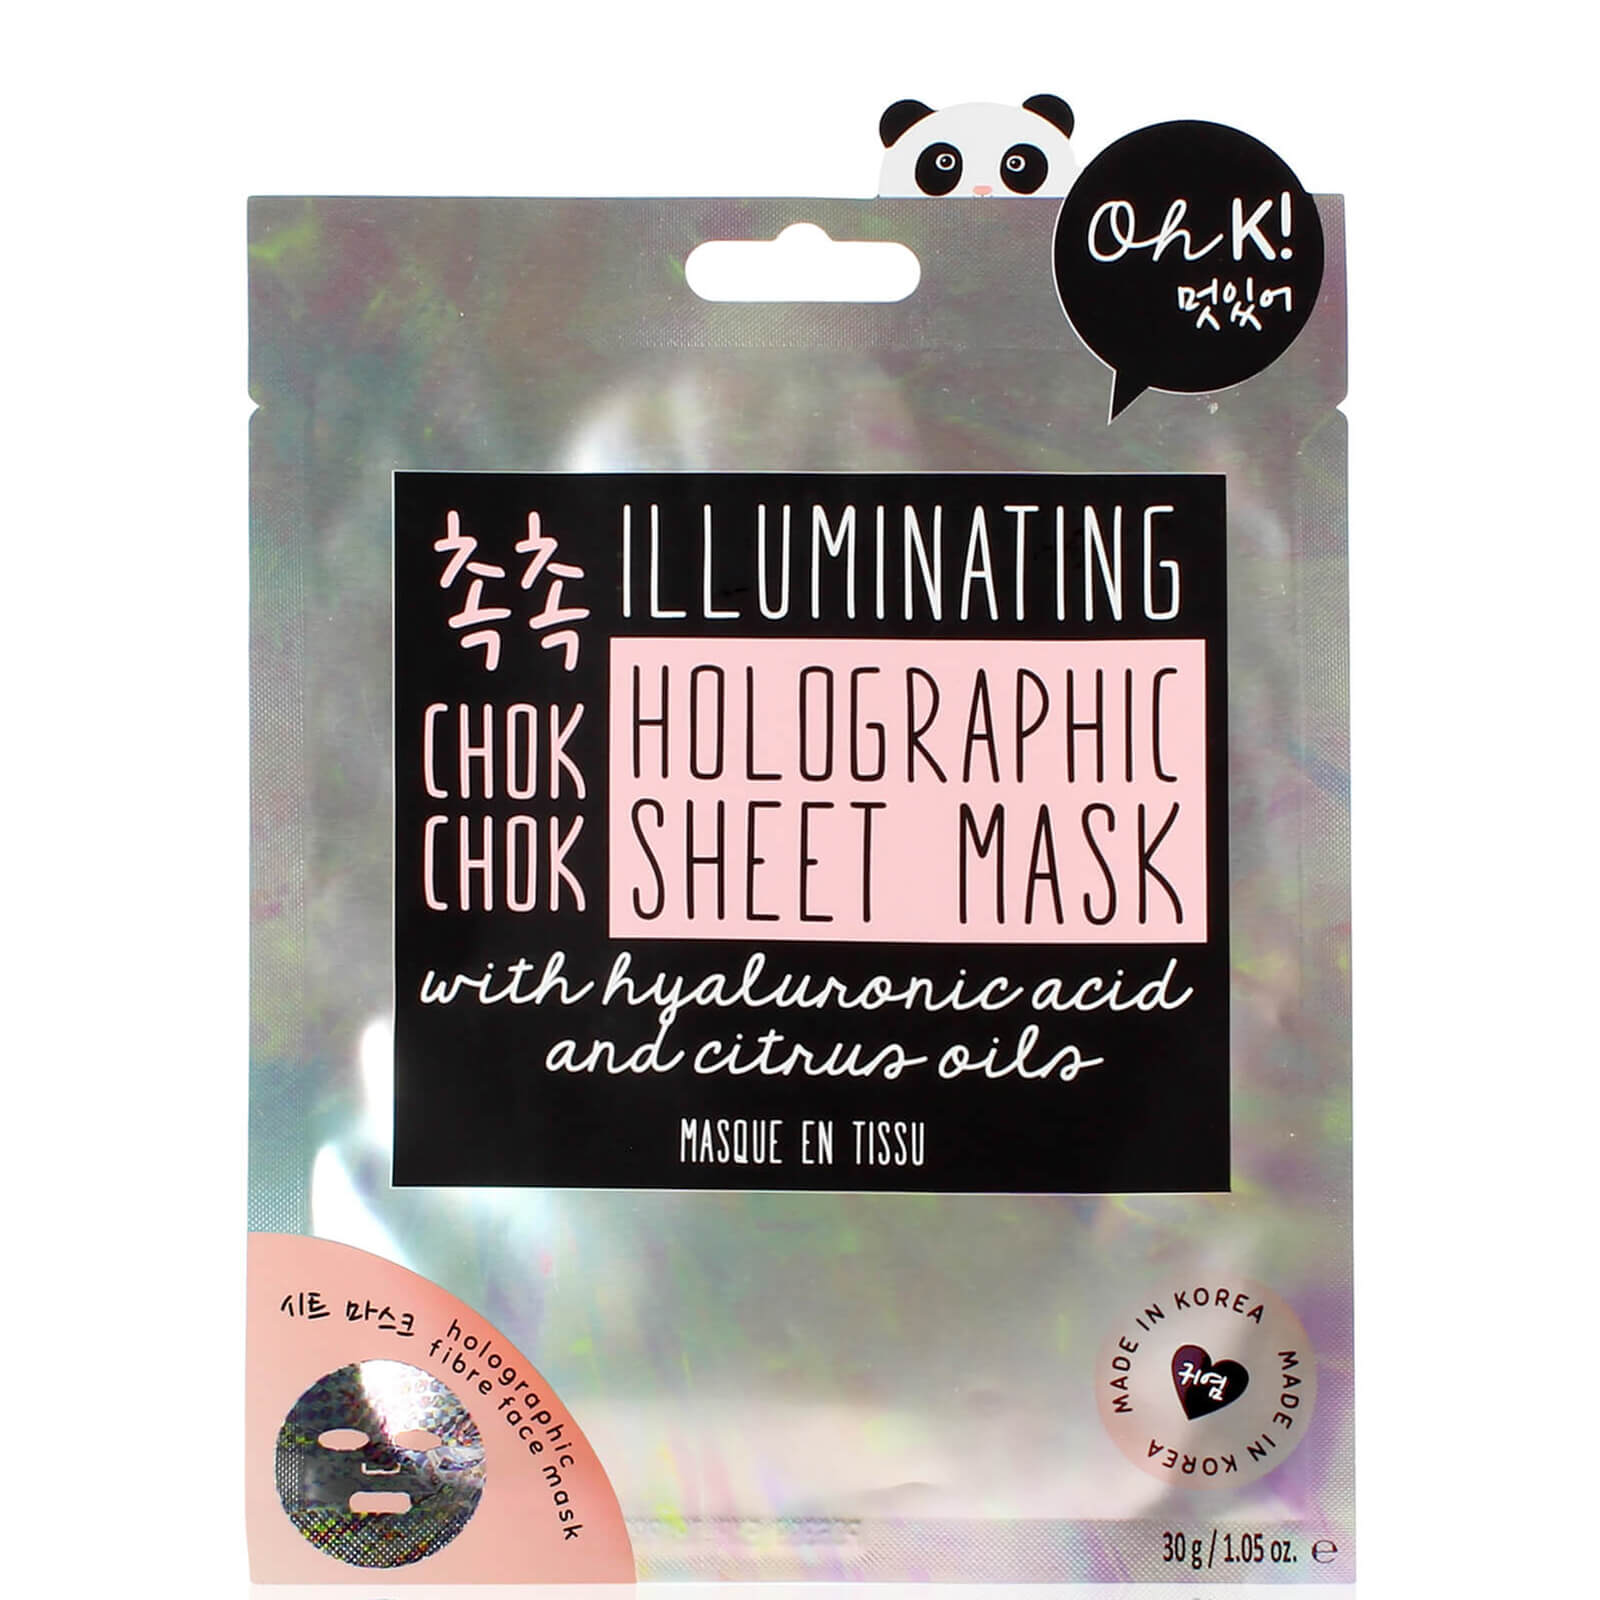 oh k! chok chok illuminating holographic sheet mask 25g